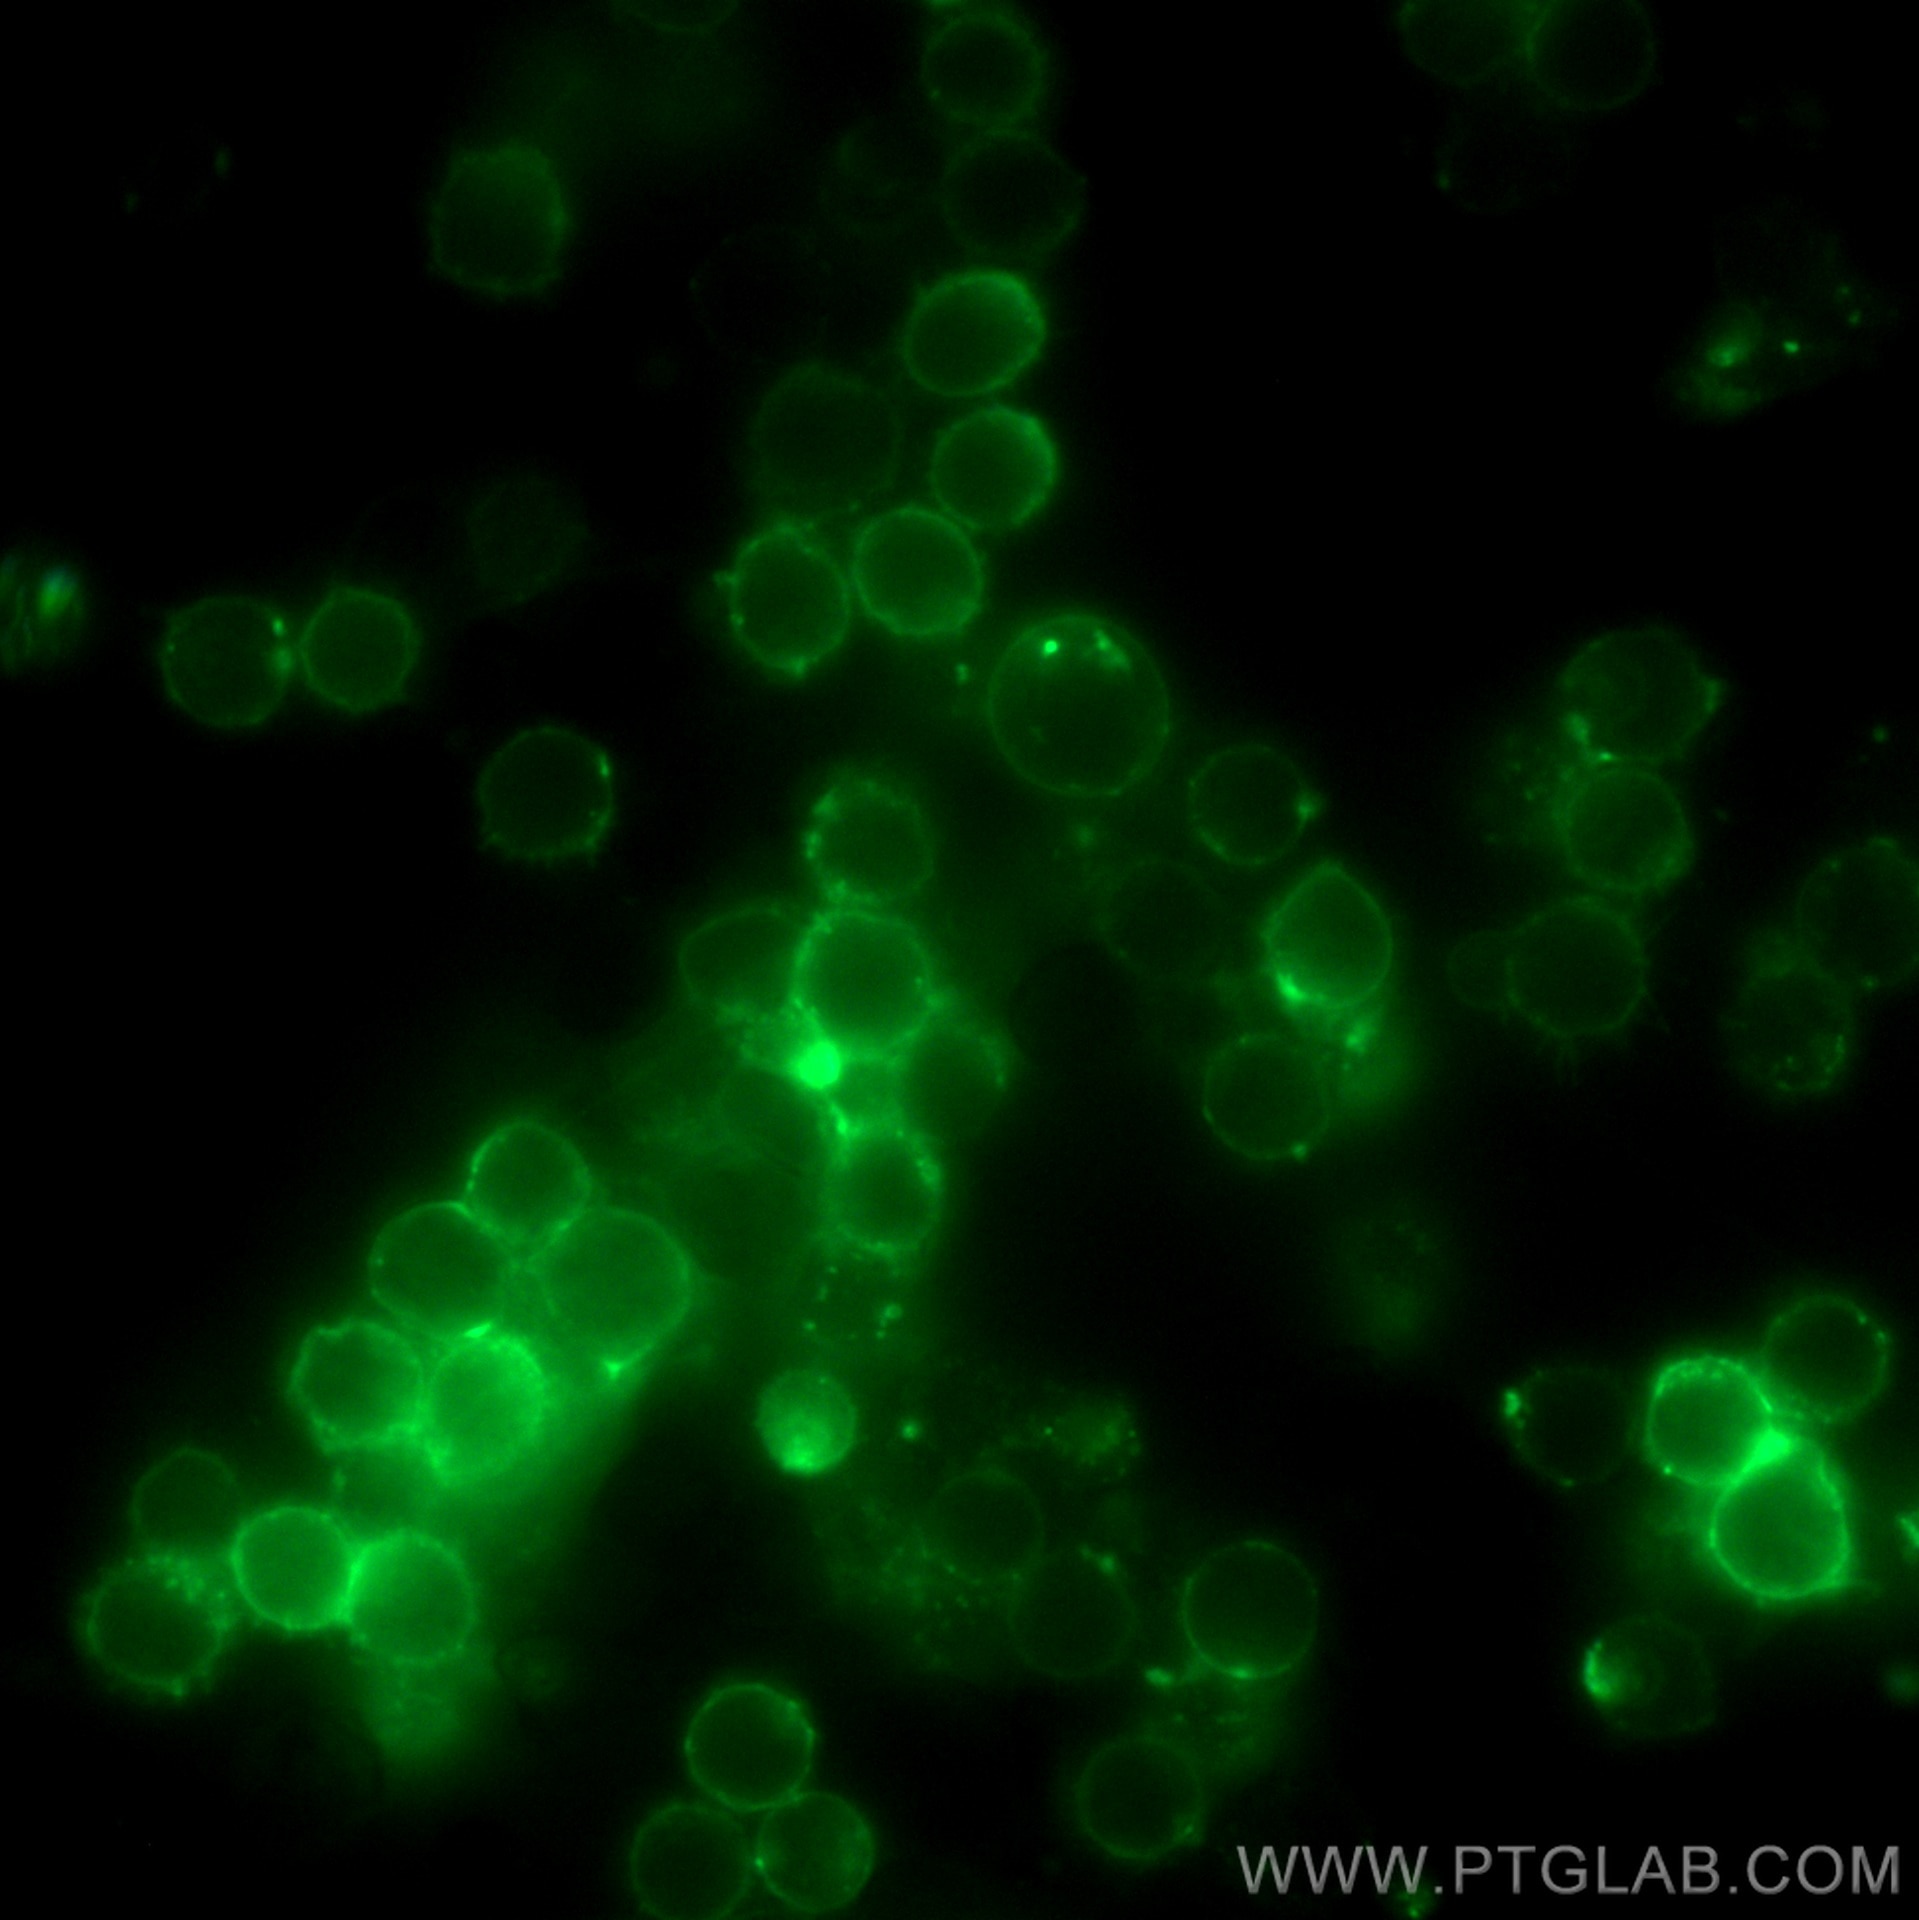 Immunofluorescence (IF) / fluorescent staining of mouse splenocytes using Anti-Mouse CD3ε (145-2C11) (65060-1-Ig)